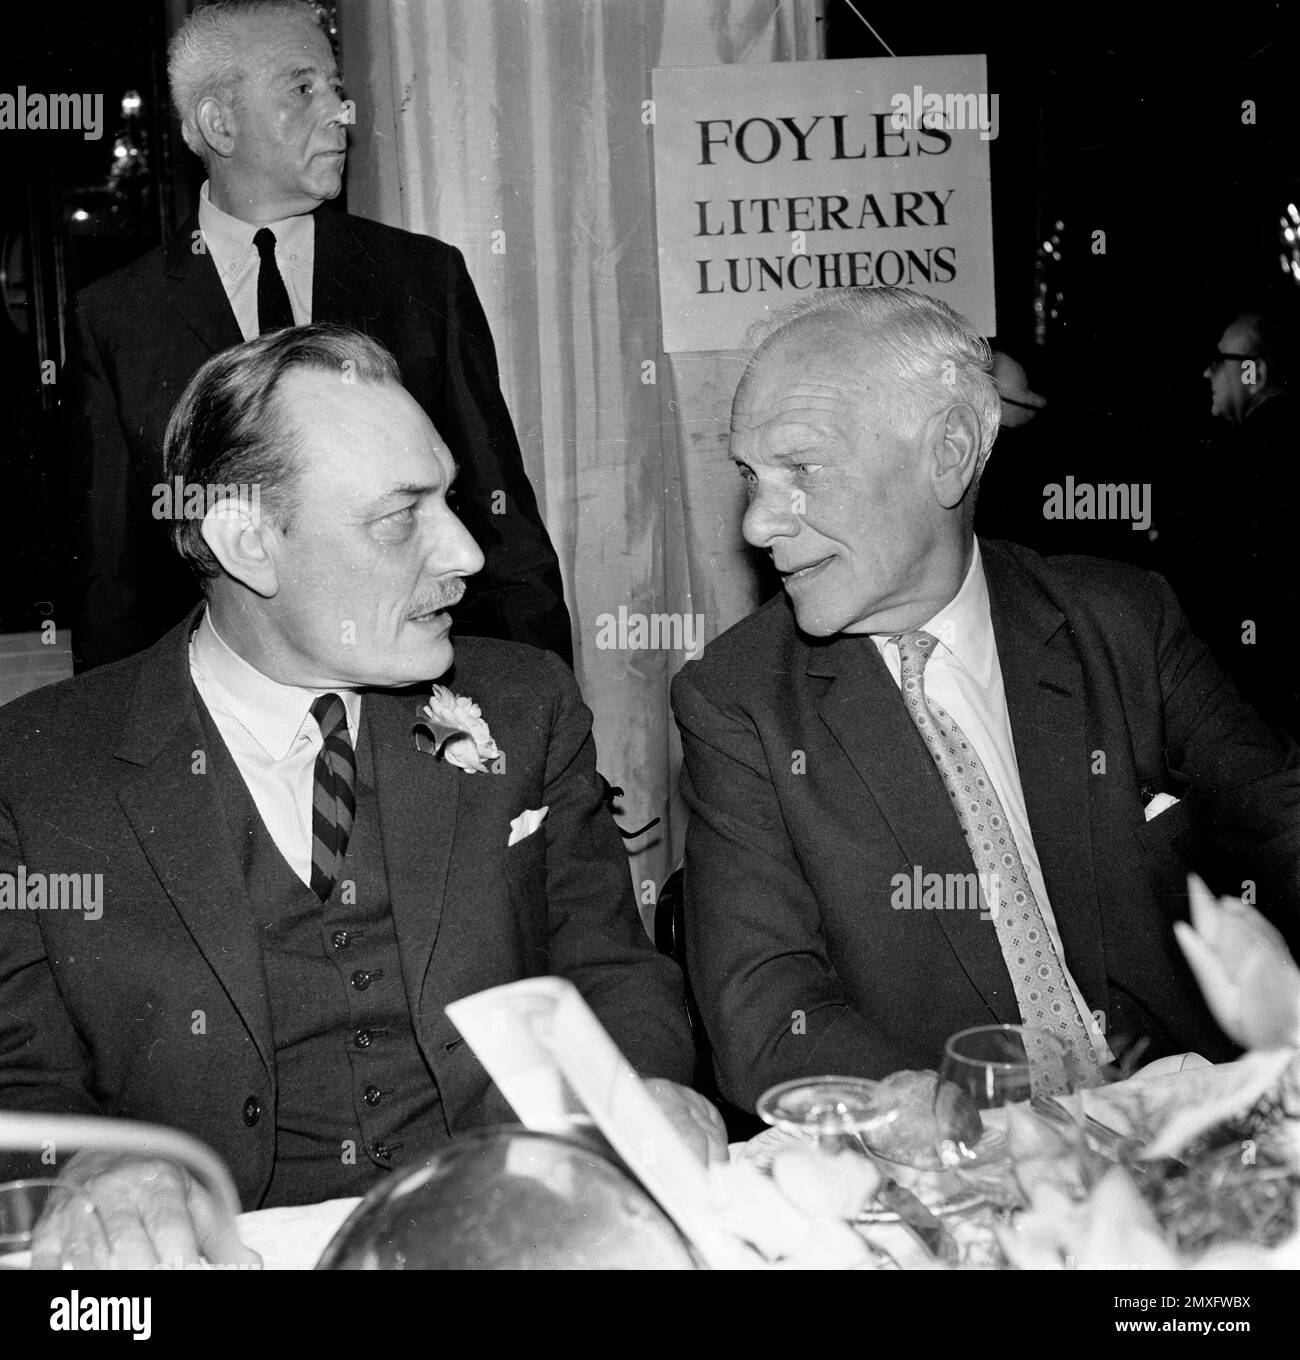 El político británico Enoch Powell y el periodista Malcolm Muggeridge en el almuerzo literario de Foyles en Londres 1969 Foto de stock